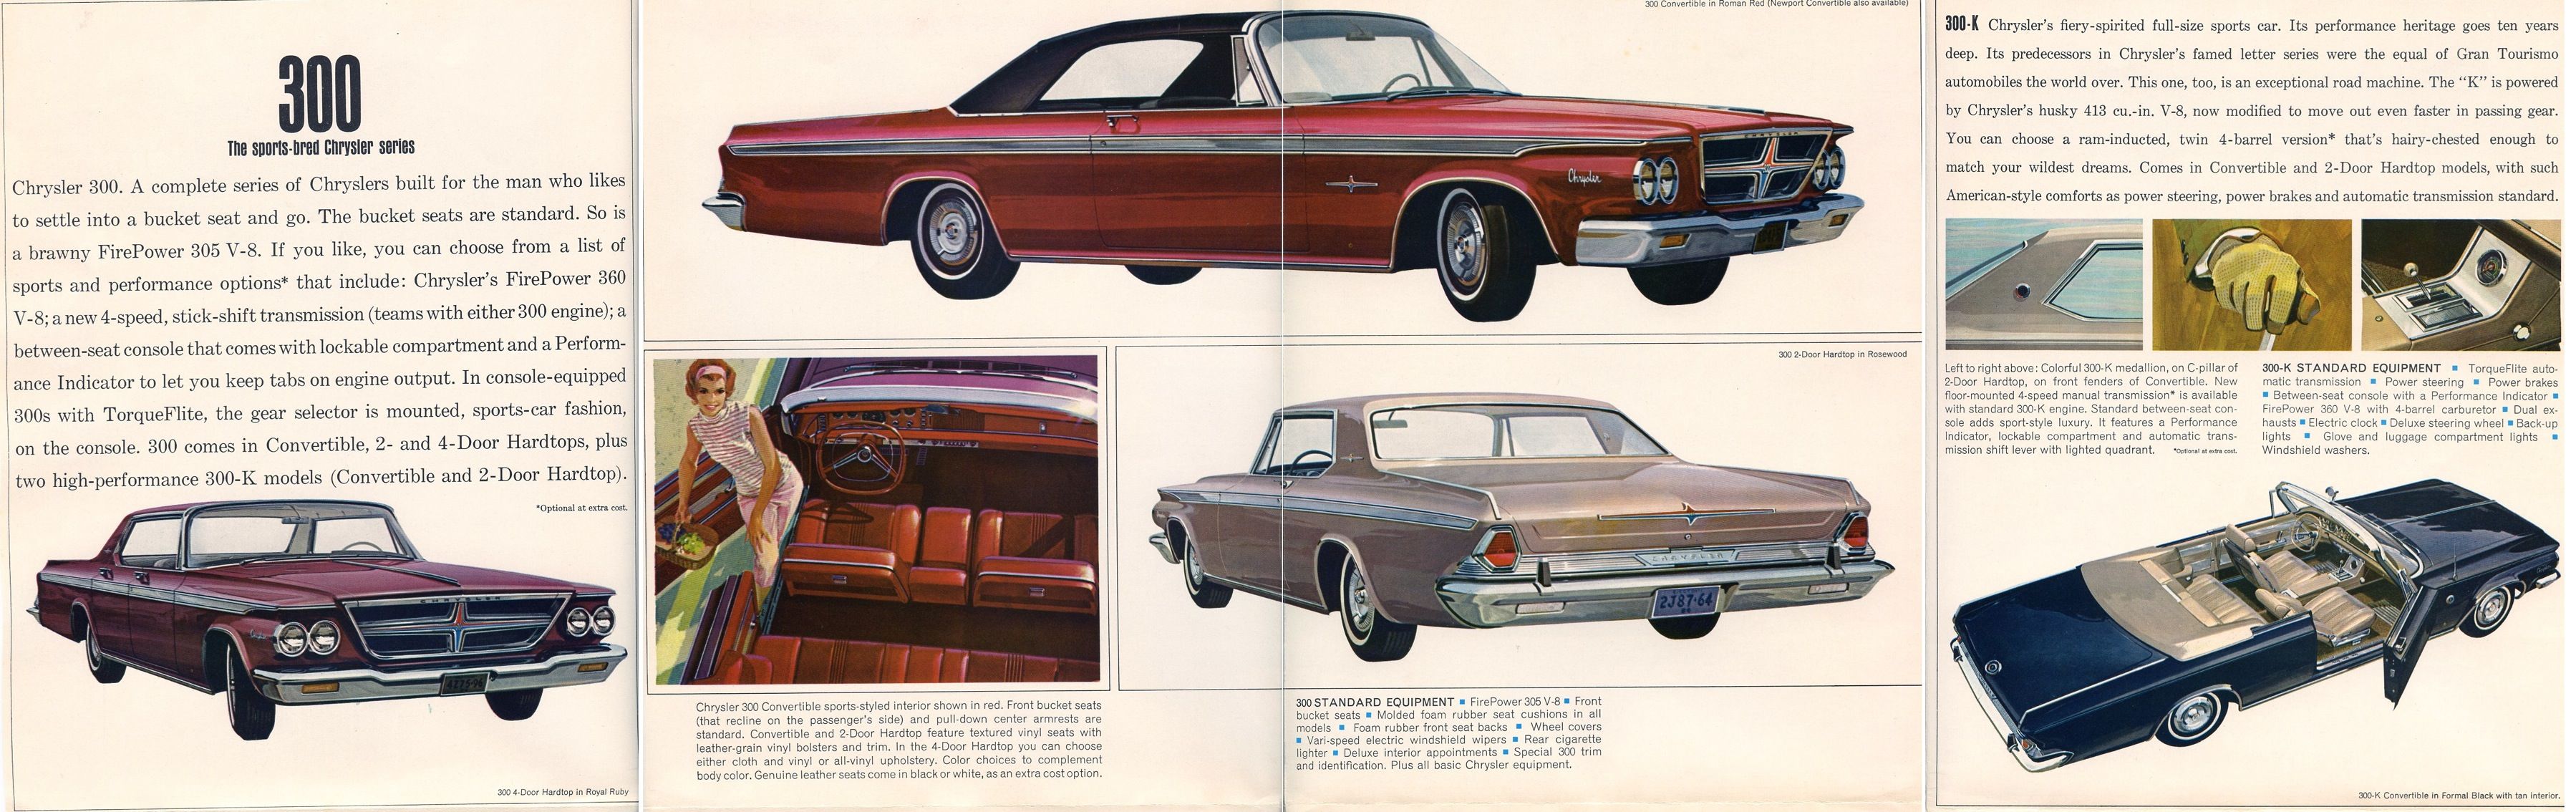 1964 Chrysler Full Line Foldout-04